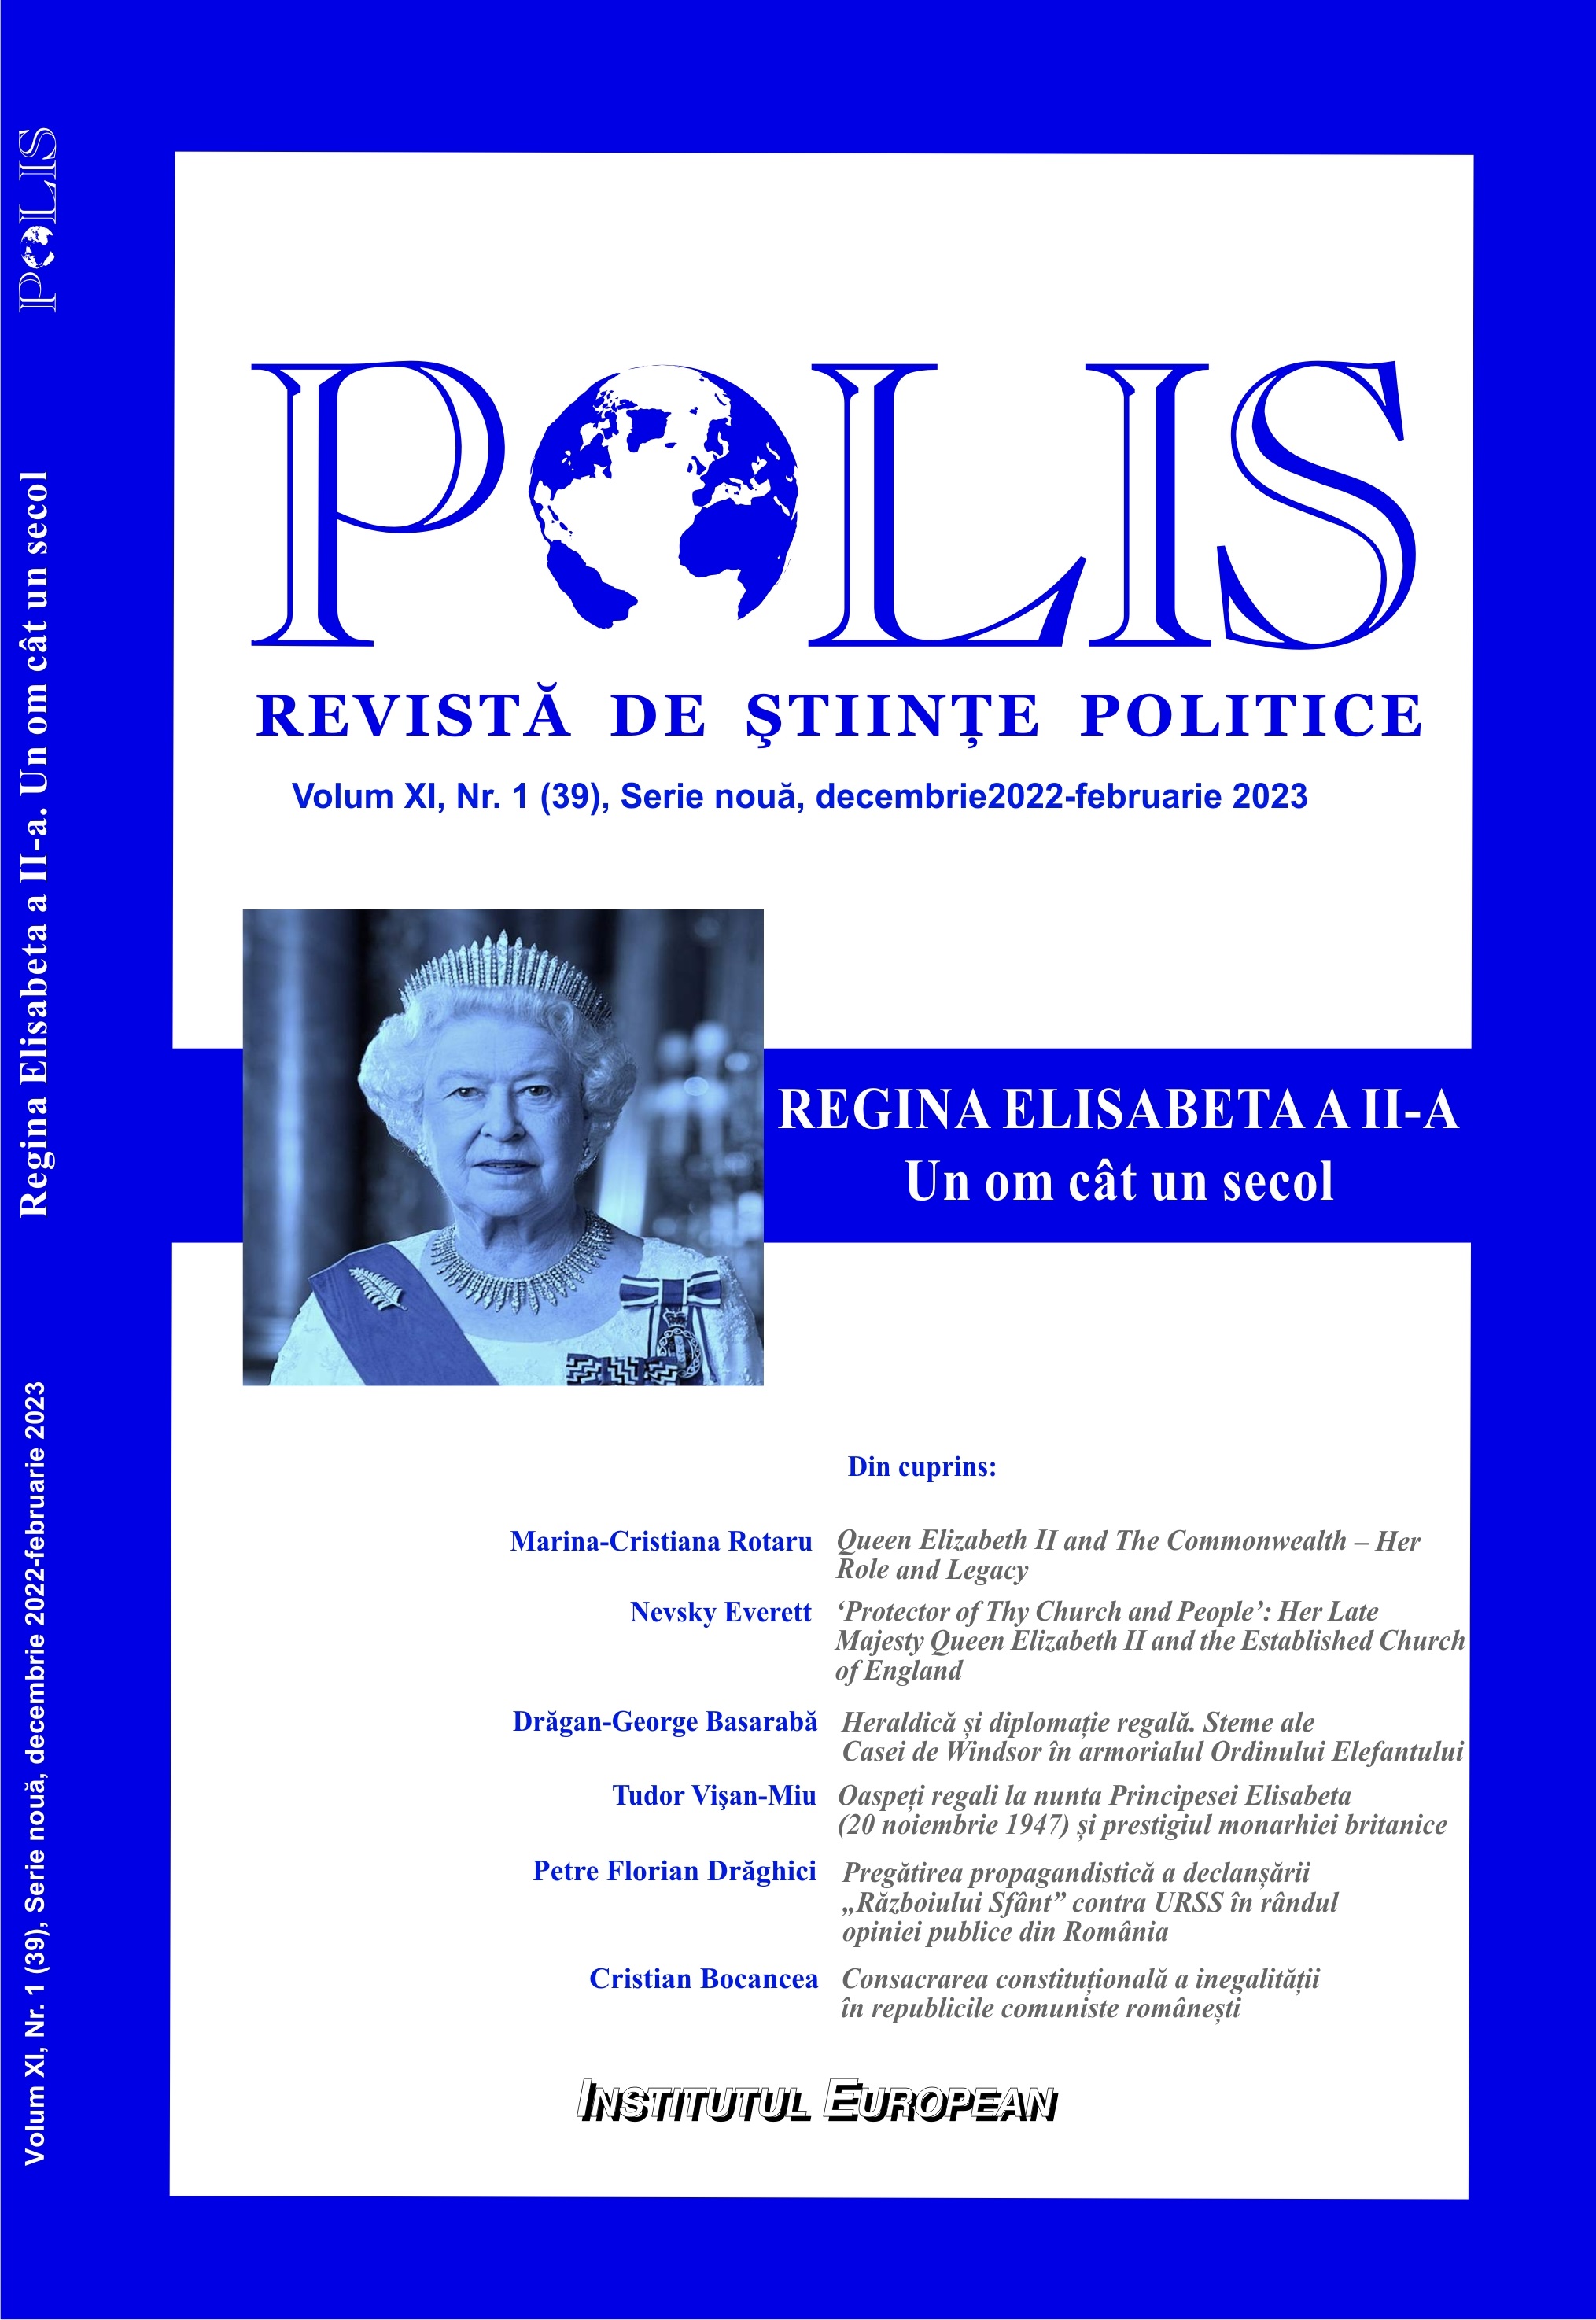 Consacrarea constituțională a inegalității în republicile comuniste românești